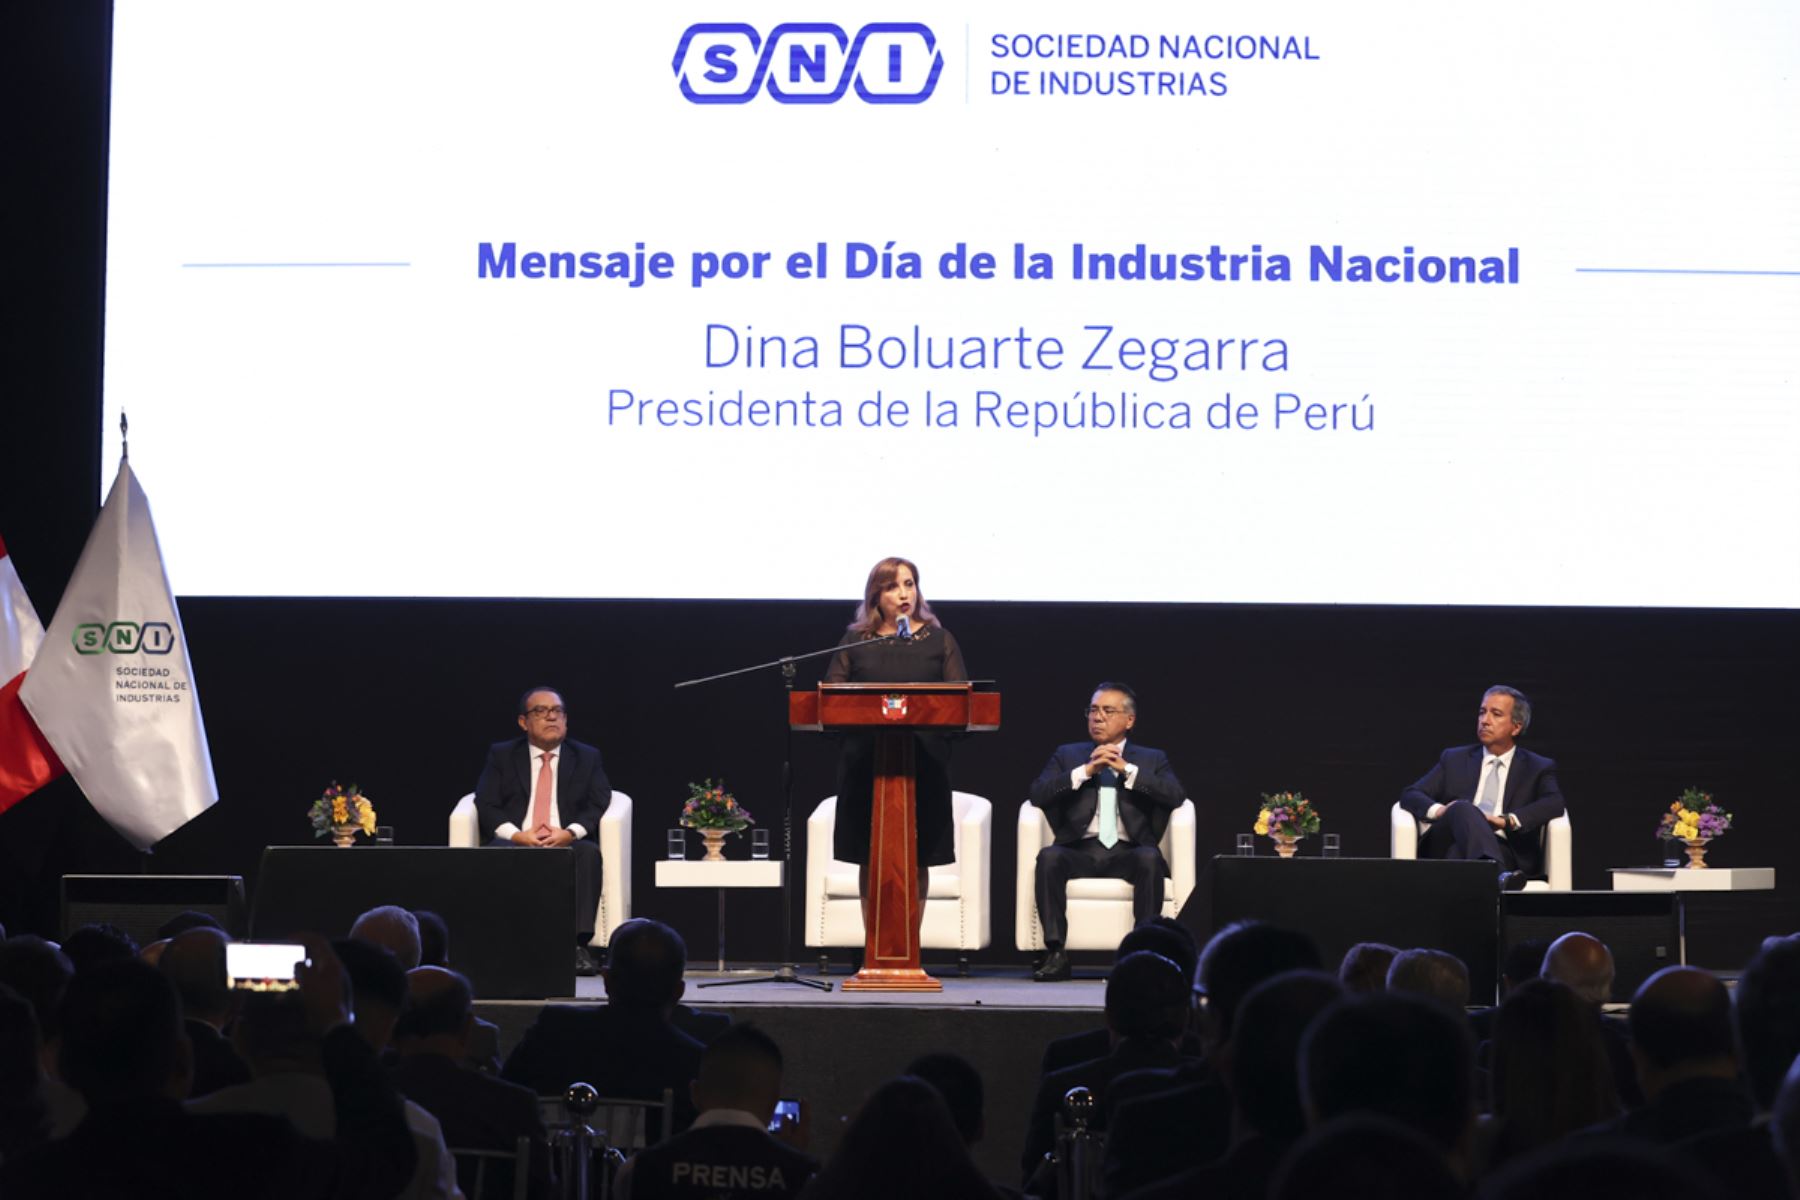 Presidenta de la República, Dina Boluarte, participa en la ceremonia conmemorativa del Día de la Industria Nacional

Foto: ANDINA/Prensa Presidencia

Foto: ANDINA/Prensa Presidencia